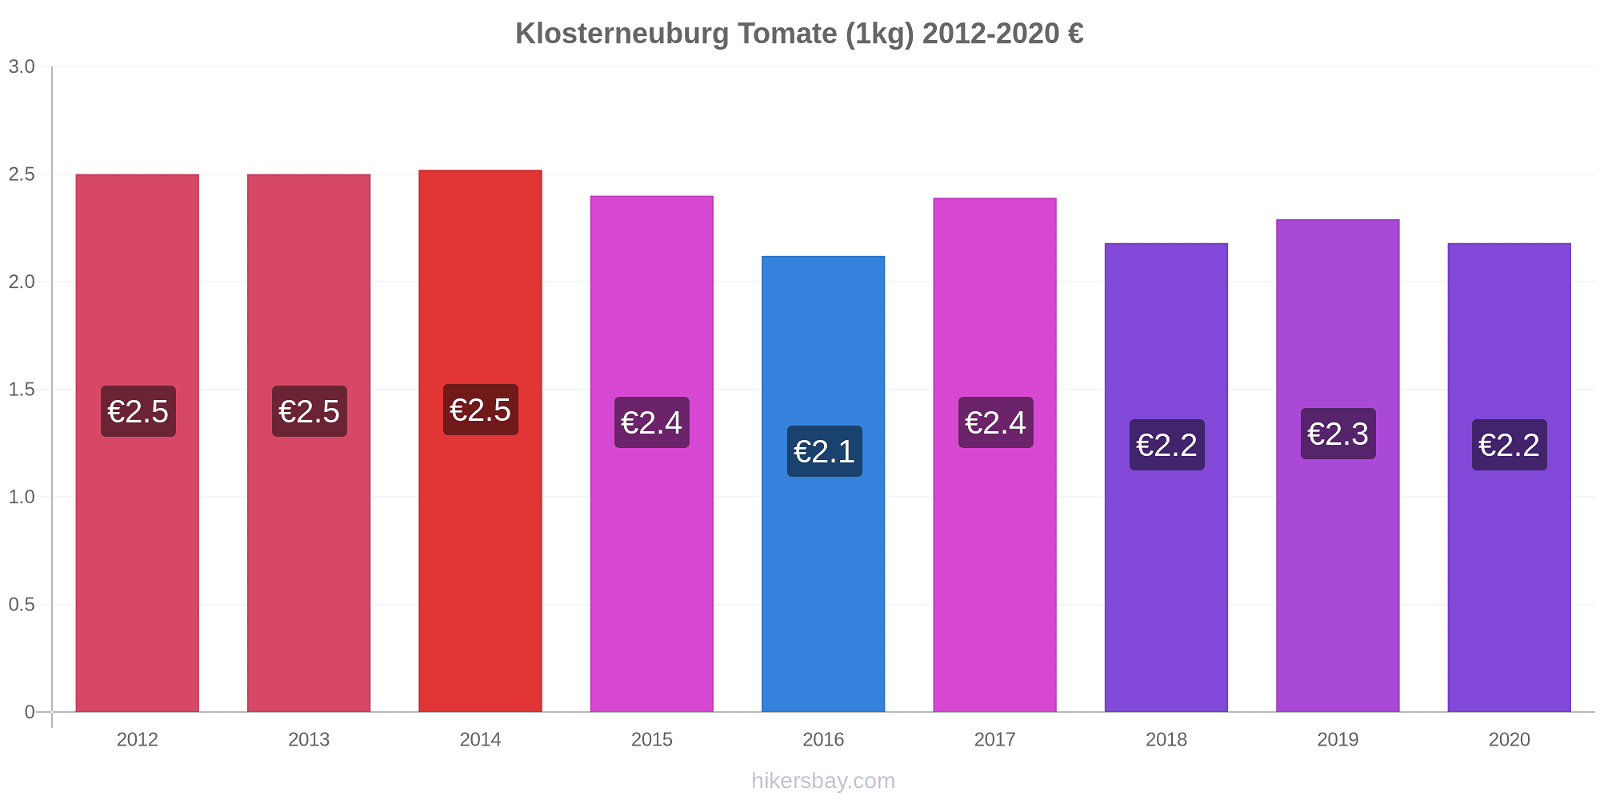 Klosterneuburg cambios de precios Tomate (1kg) hikersbay.com